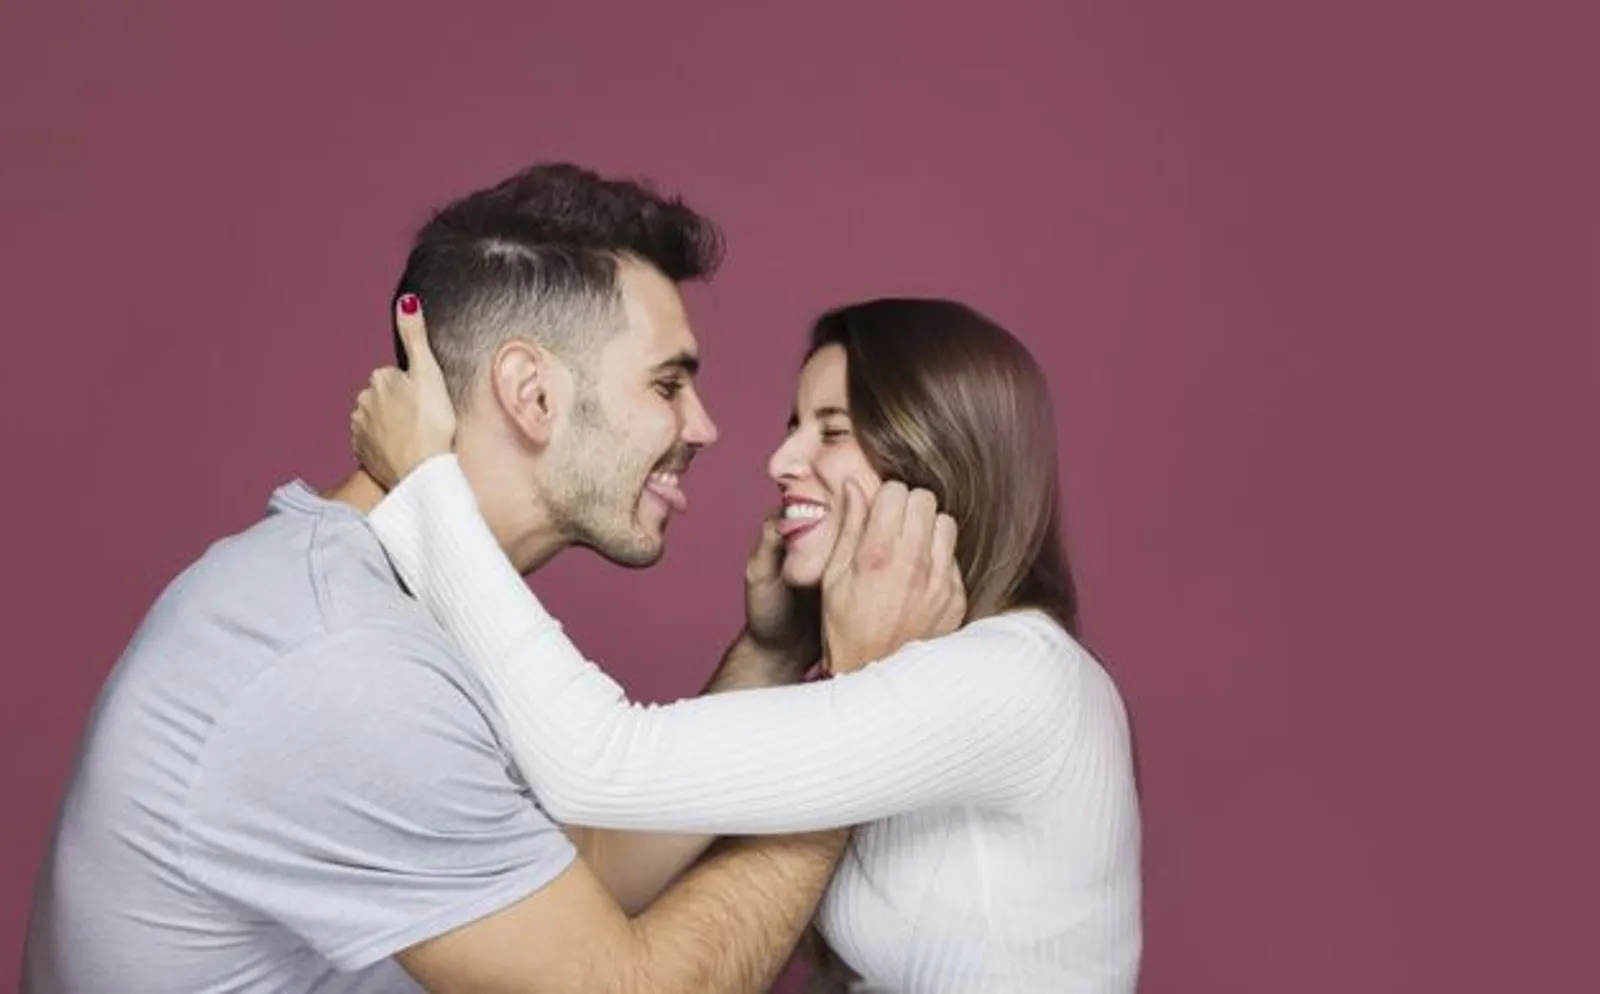 Kata-Kata Rindu Romantis Buat Pacar Ini Bikin Kamu Tambah Lengket